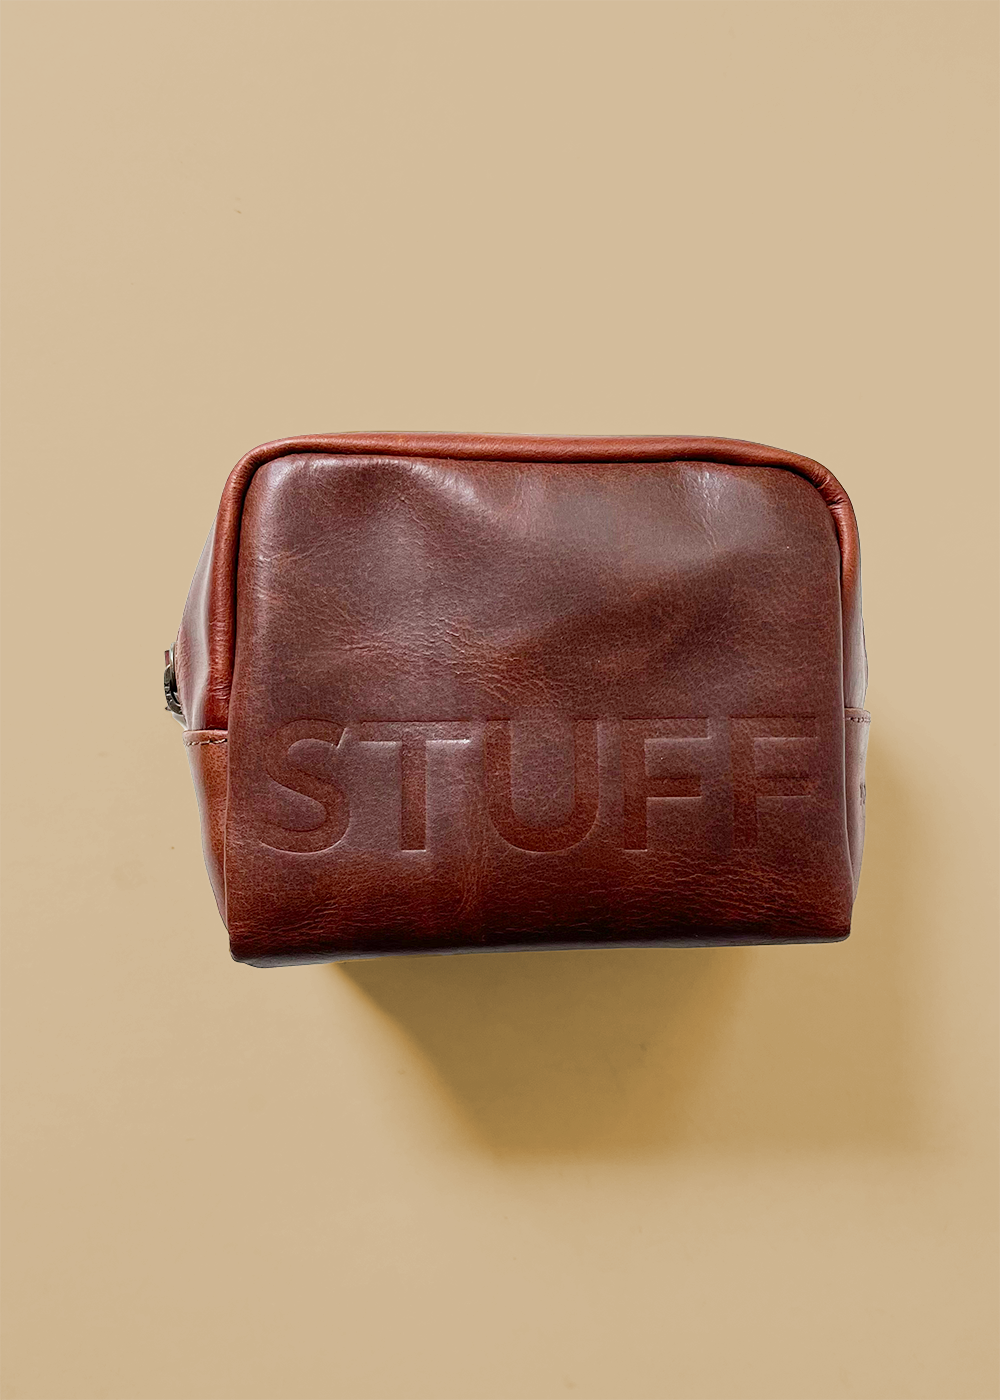 STUFF Mini Dopp Kit